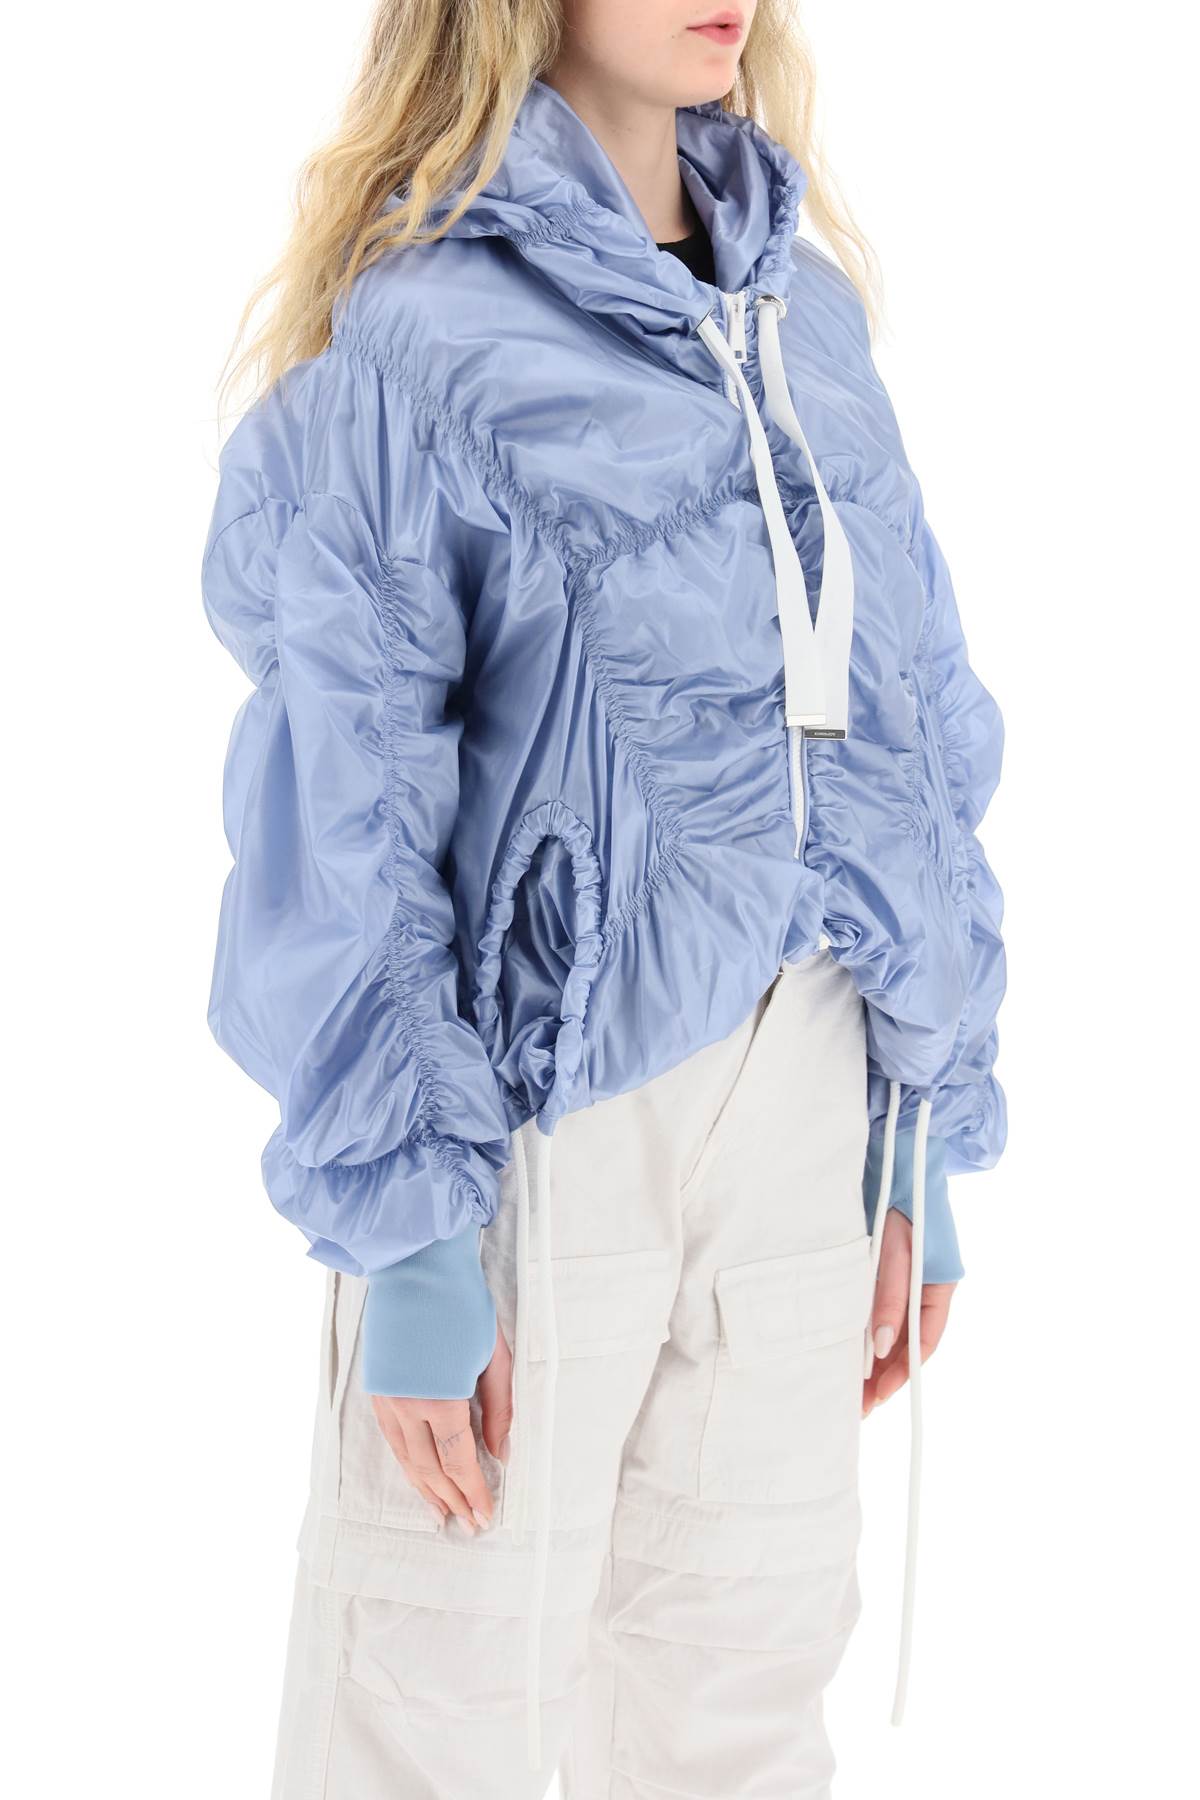 Khrisjoy 'cloud' light windbreaker jacket-1